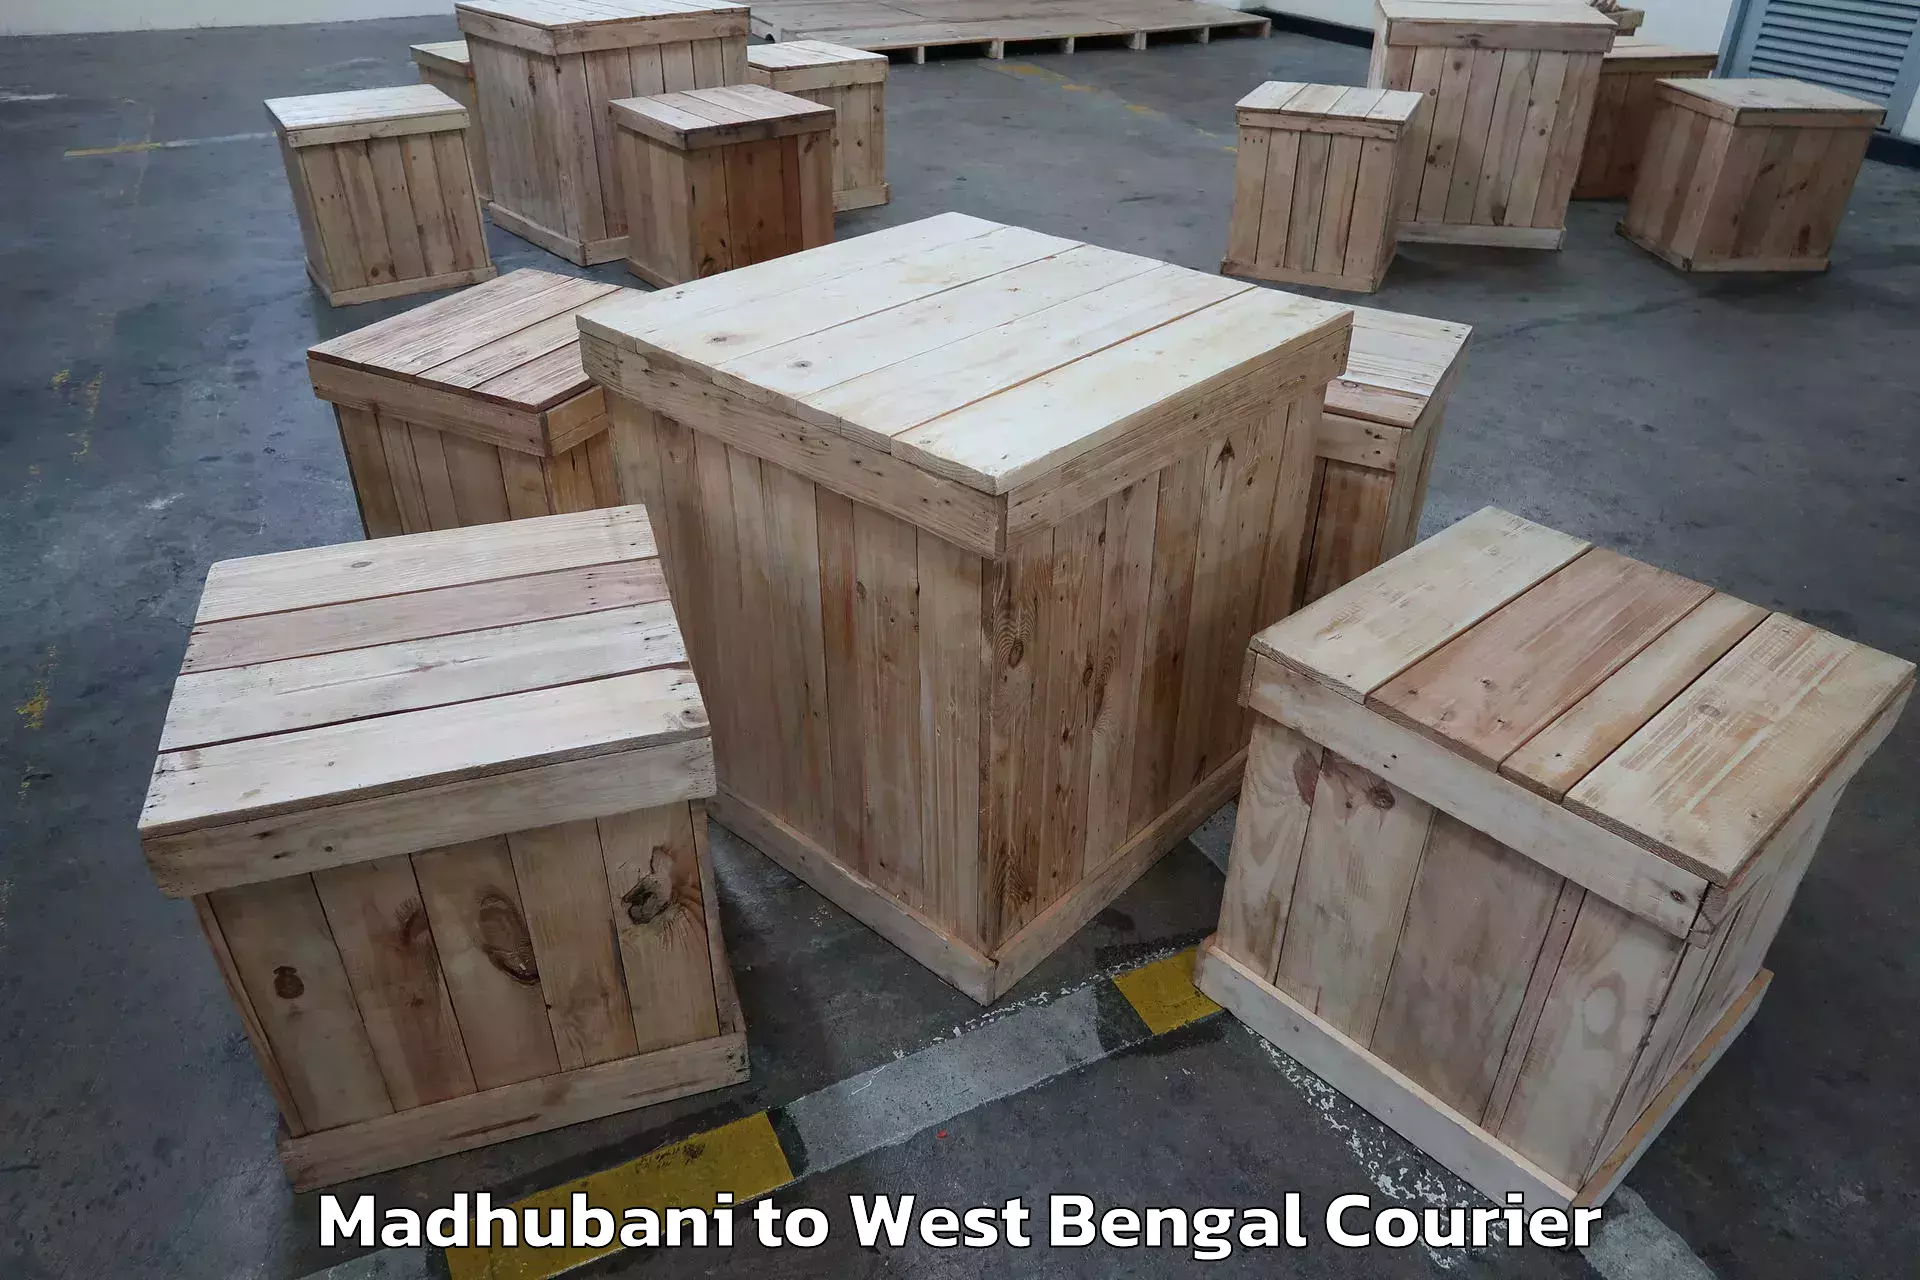 Furniture transport specialists Madhubani to Ama Dubi